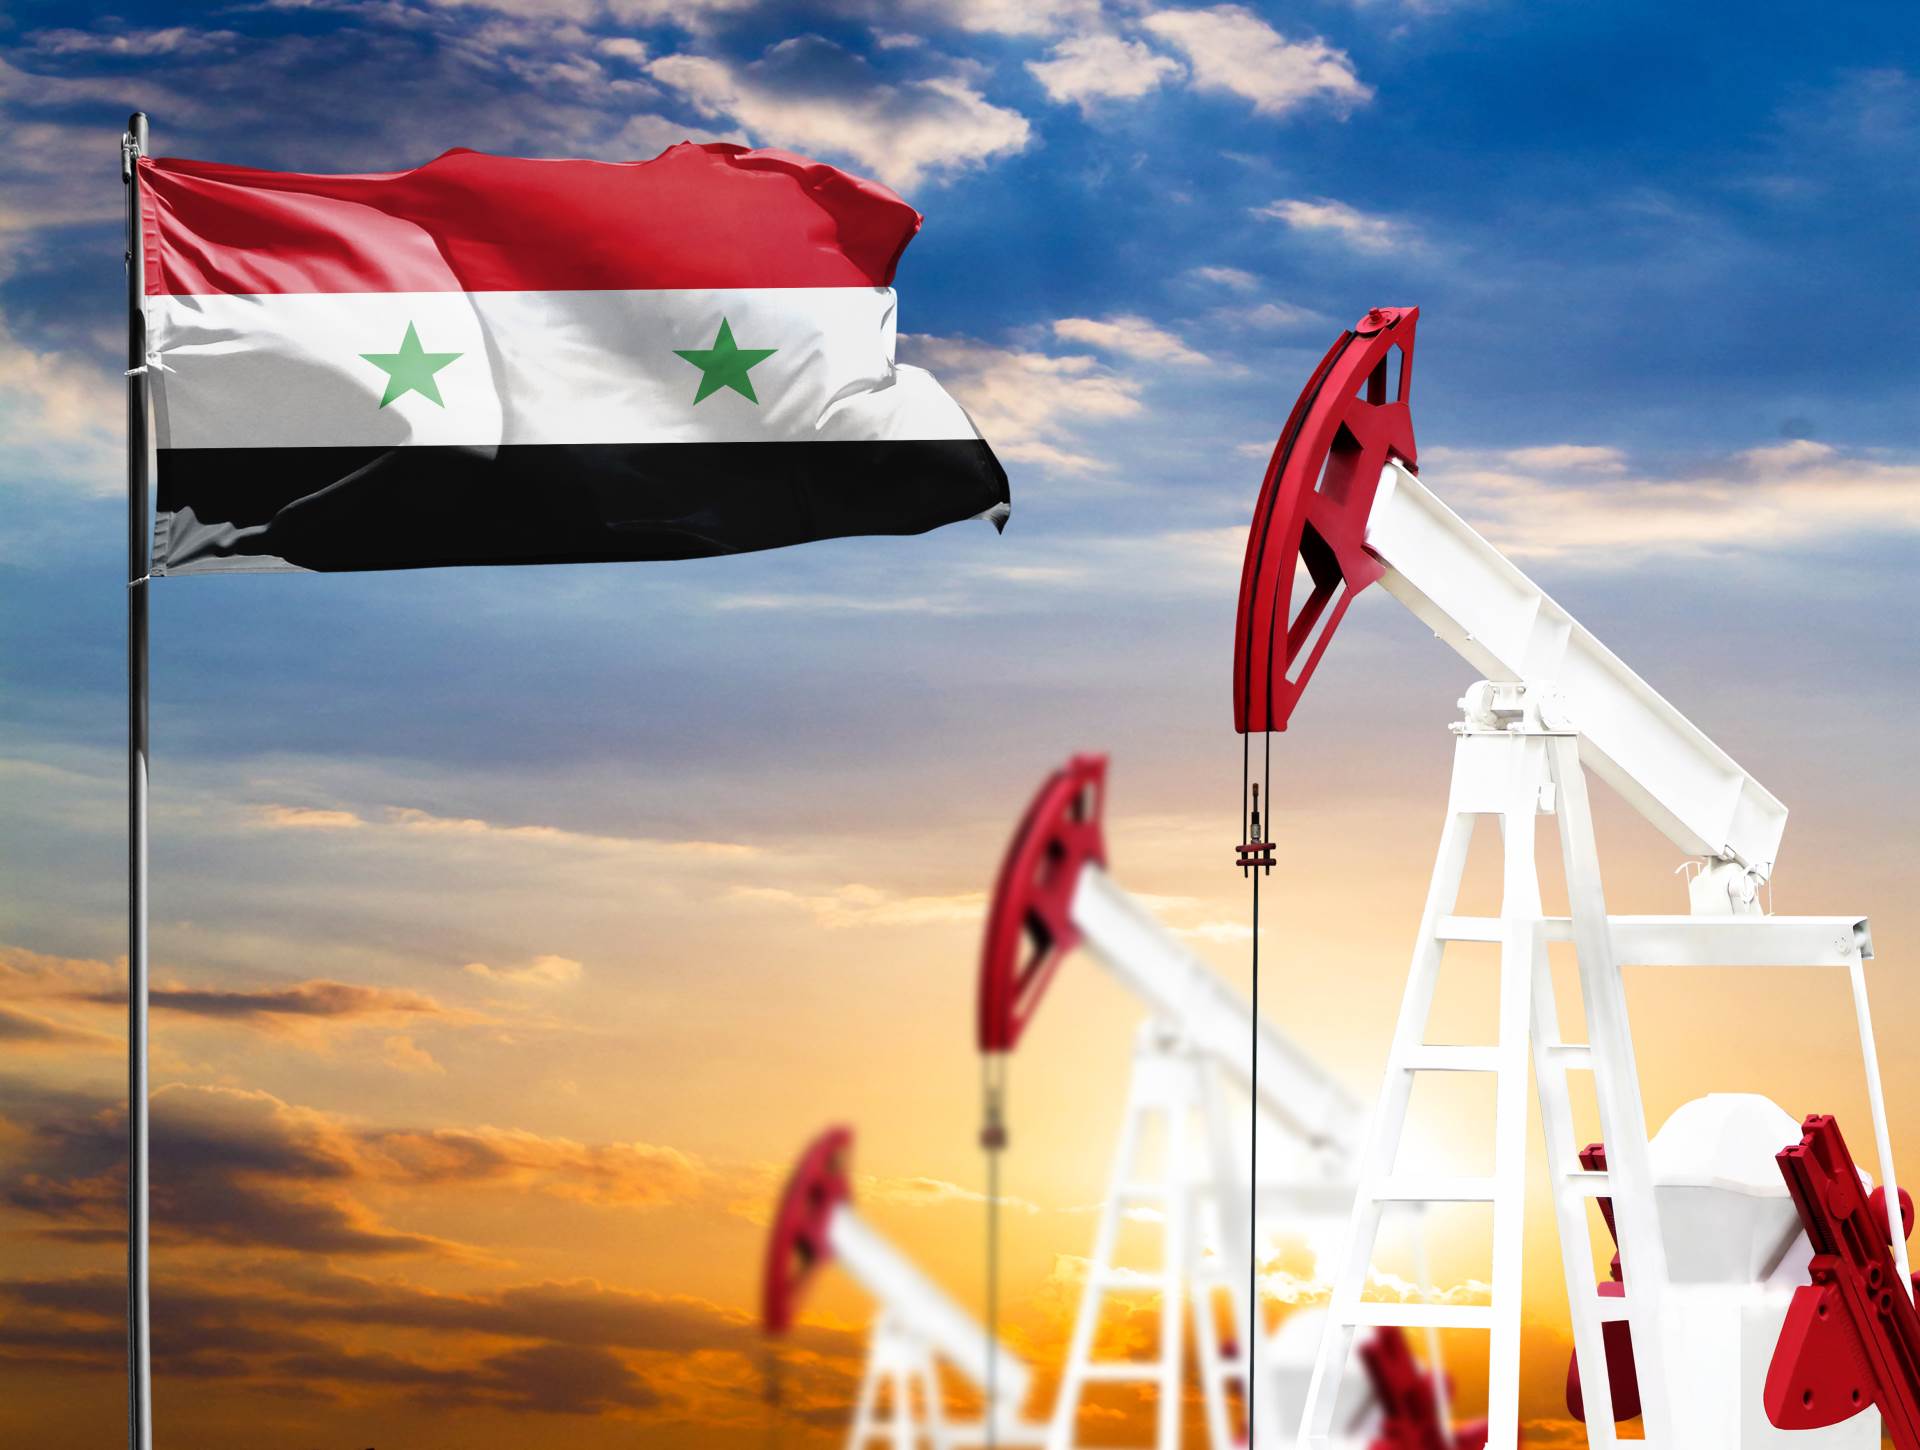  Izvoz nafte iz Sirije 